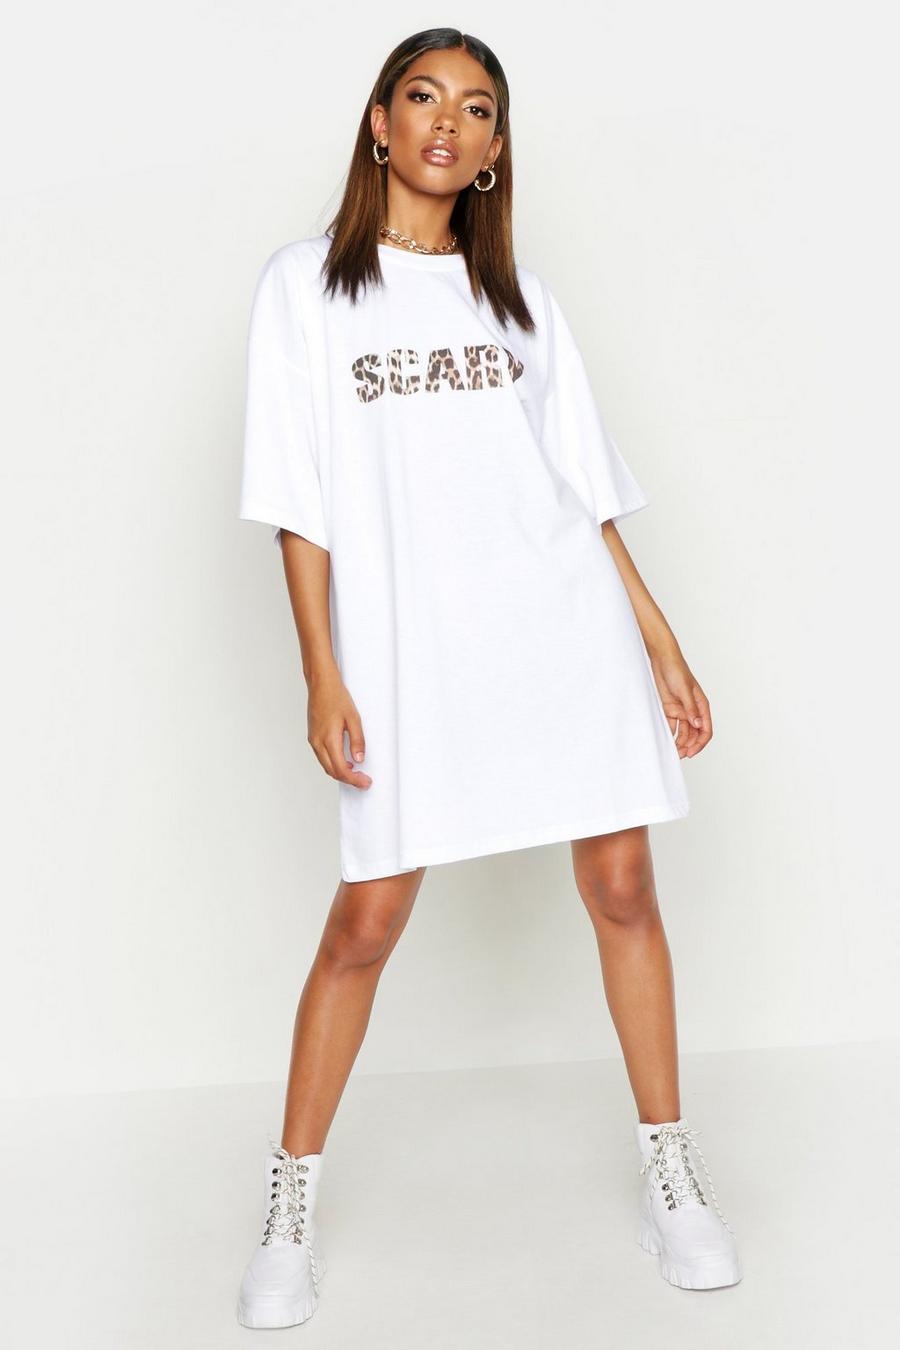 Vestido estilo camiseta ancha con eslogan “Scary” image number 1